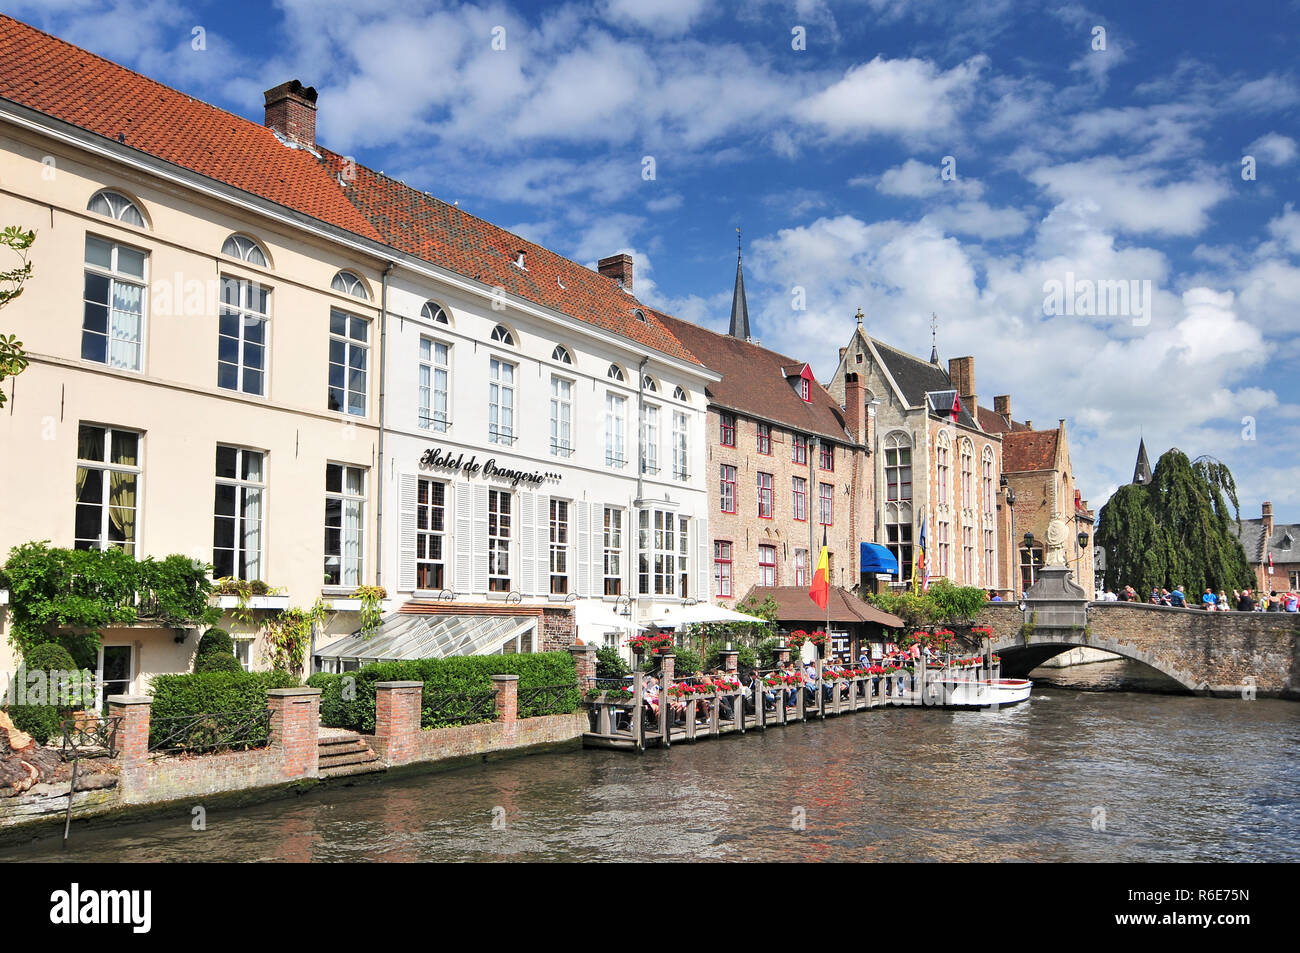 Kanal und alte Häuser in Brügge (Brugge) Belgien Stockfoto